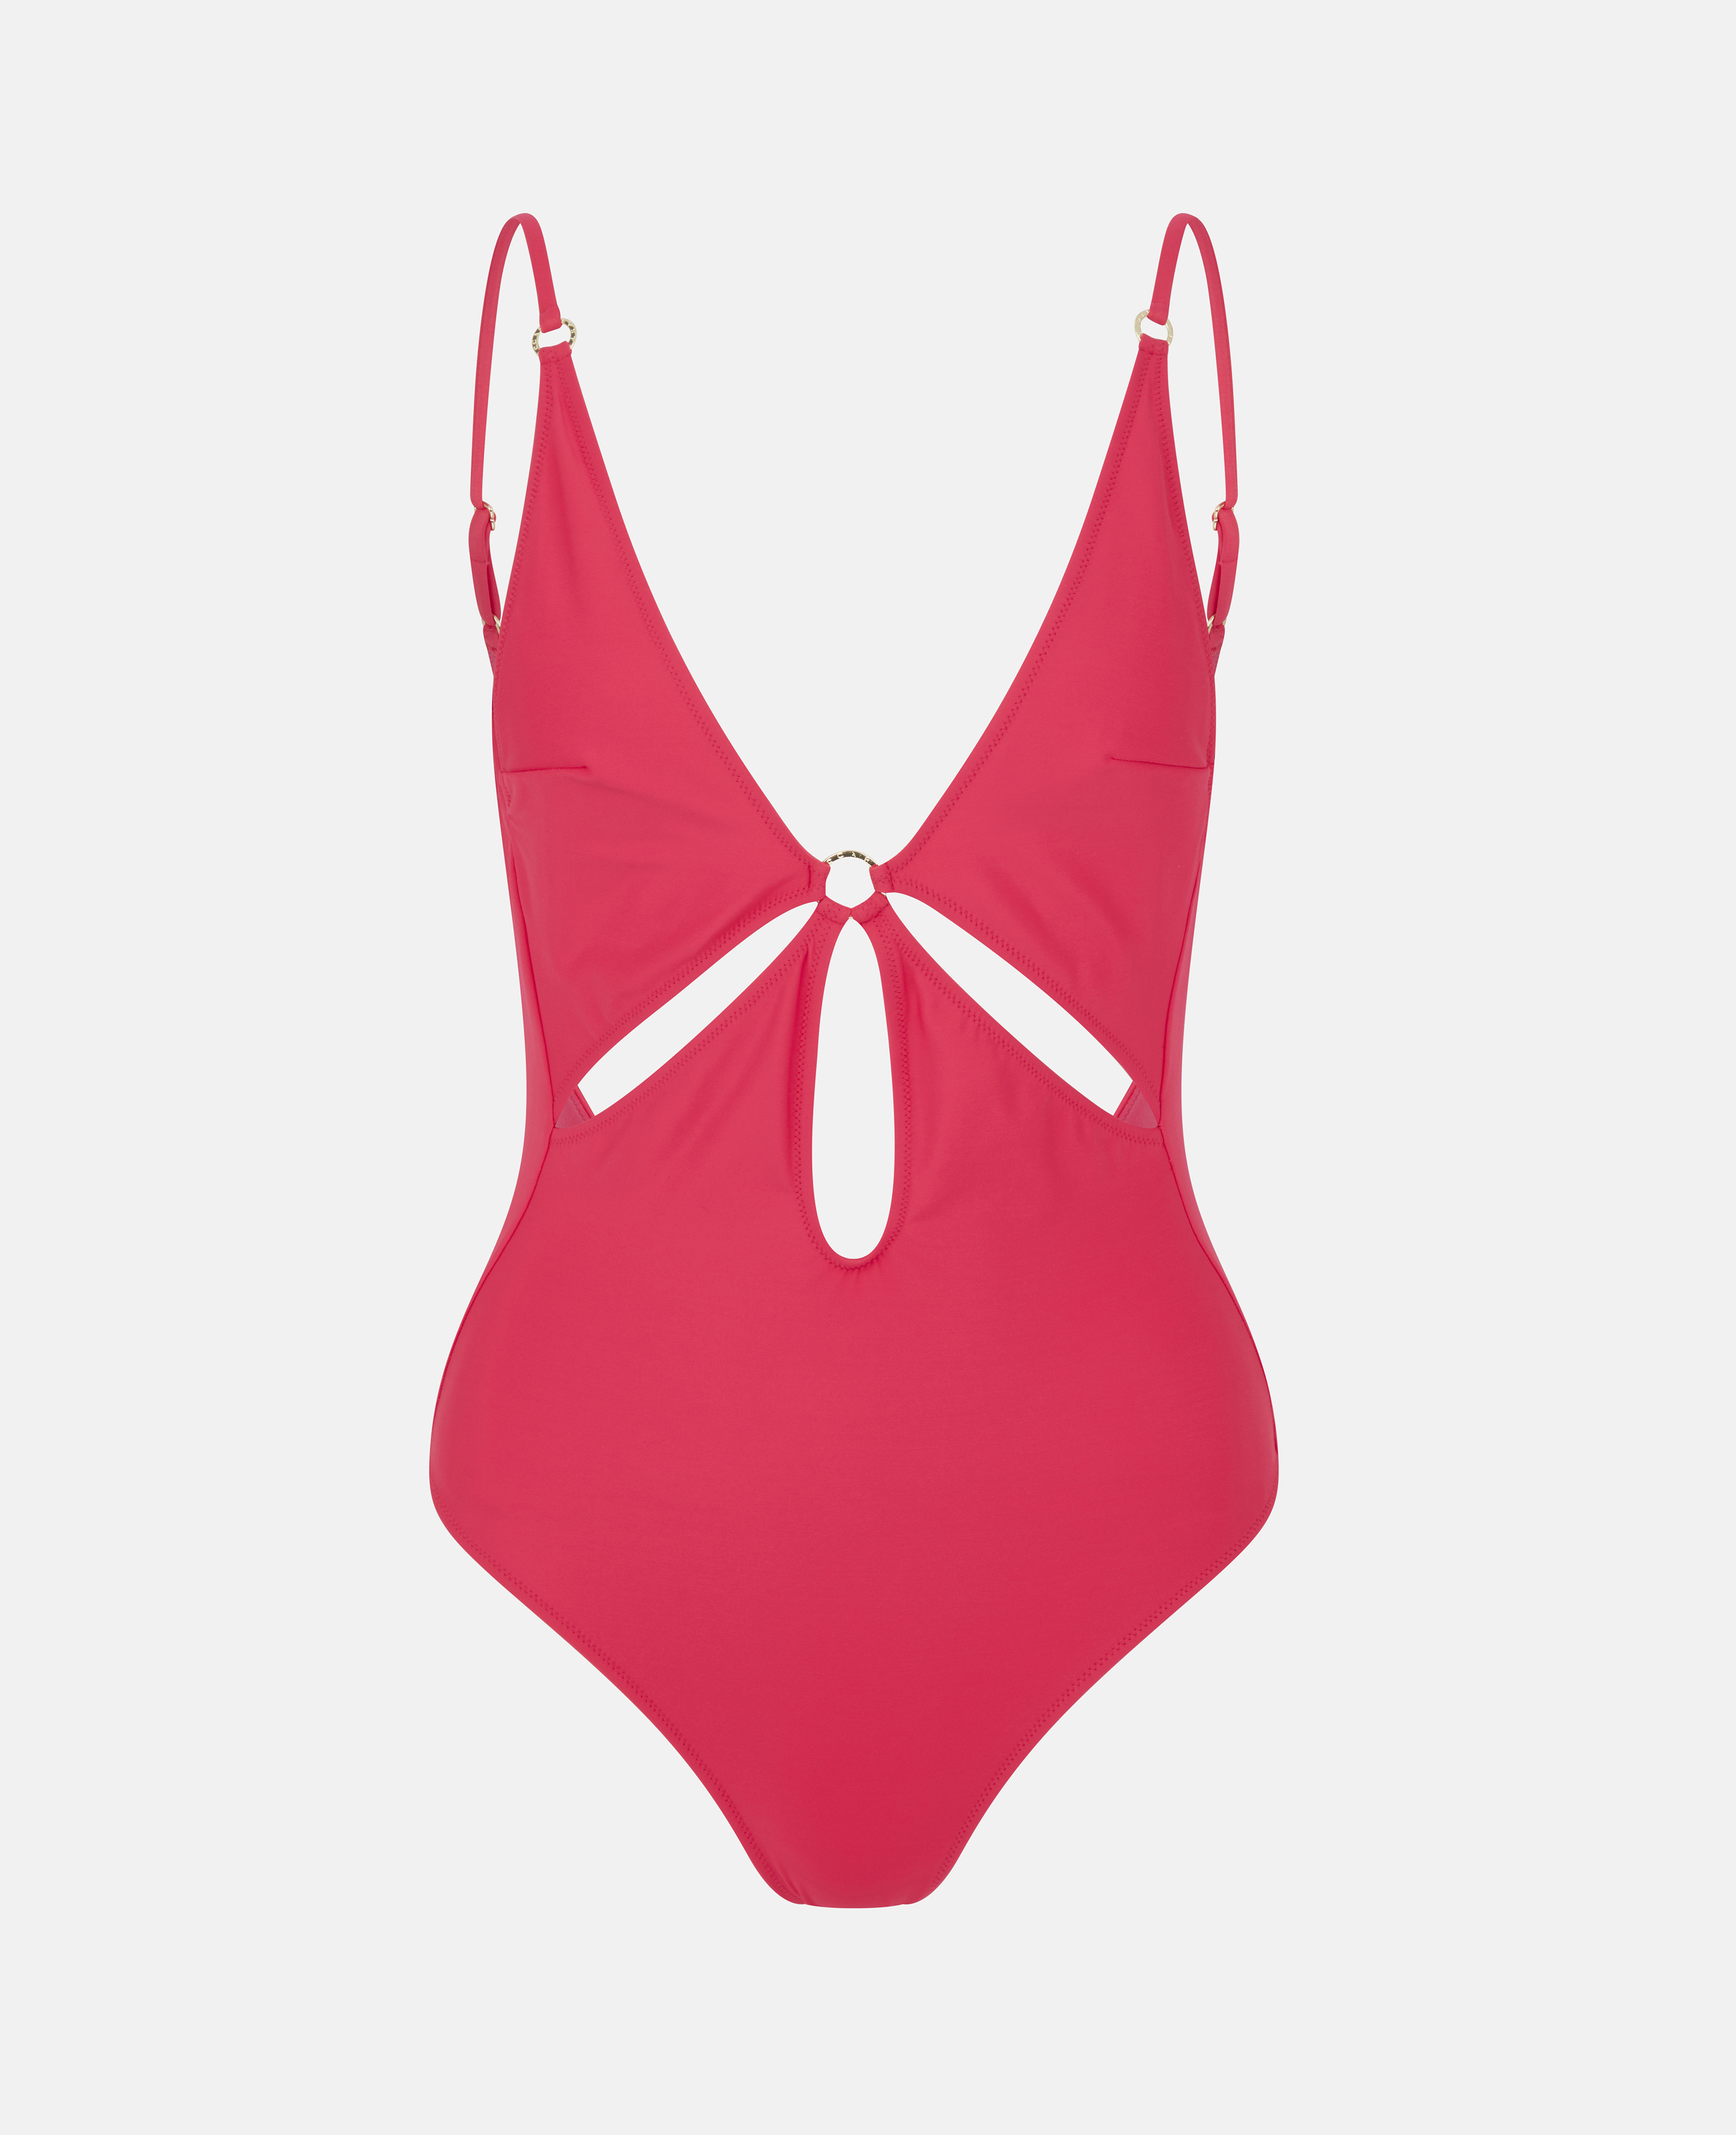 Stella Mc Cartney - Graphic Cutout Swimsuit